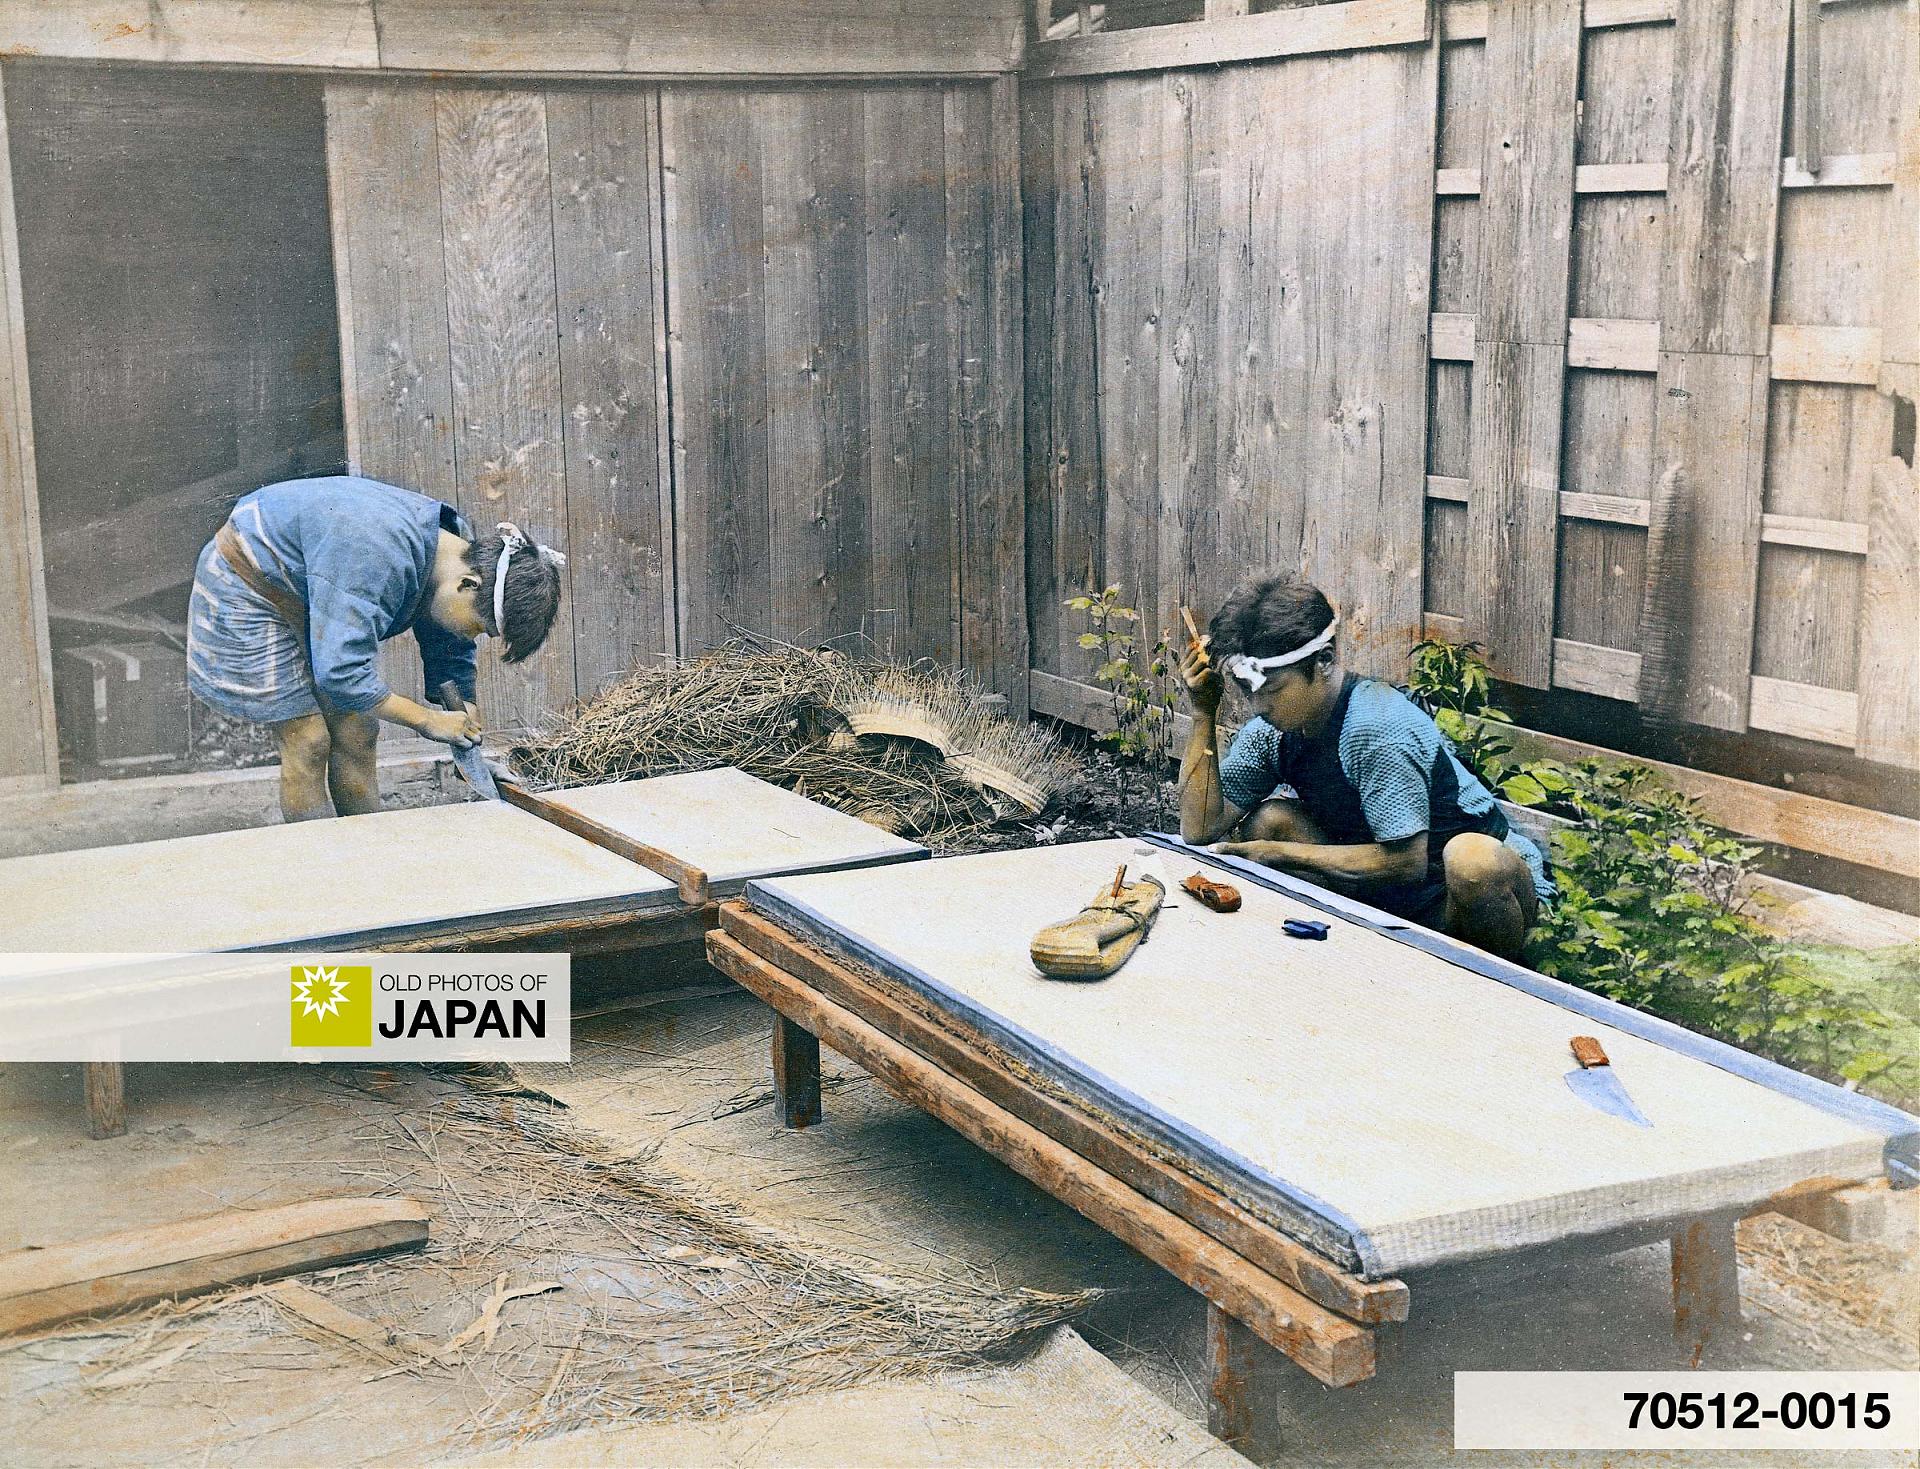 70512-0015 - Japanese Craftsmen Making Tatami Floor Mats, 1890s